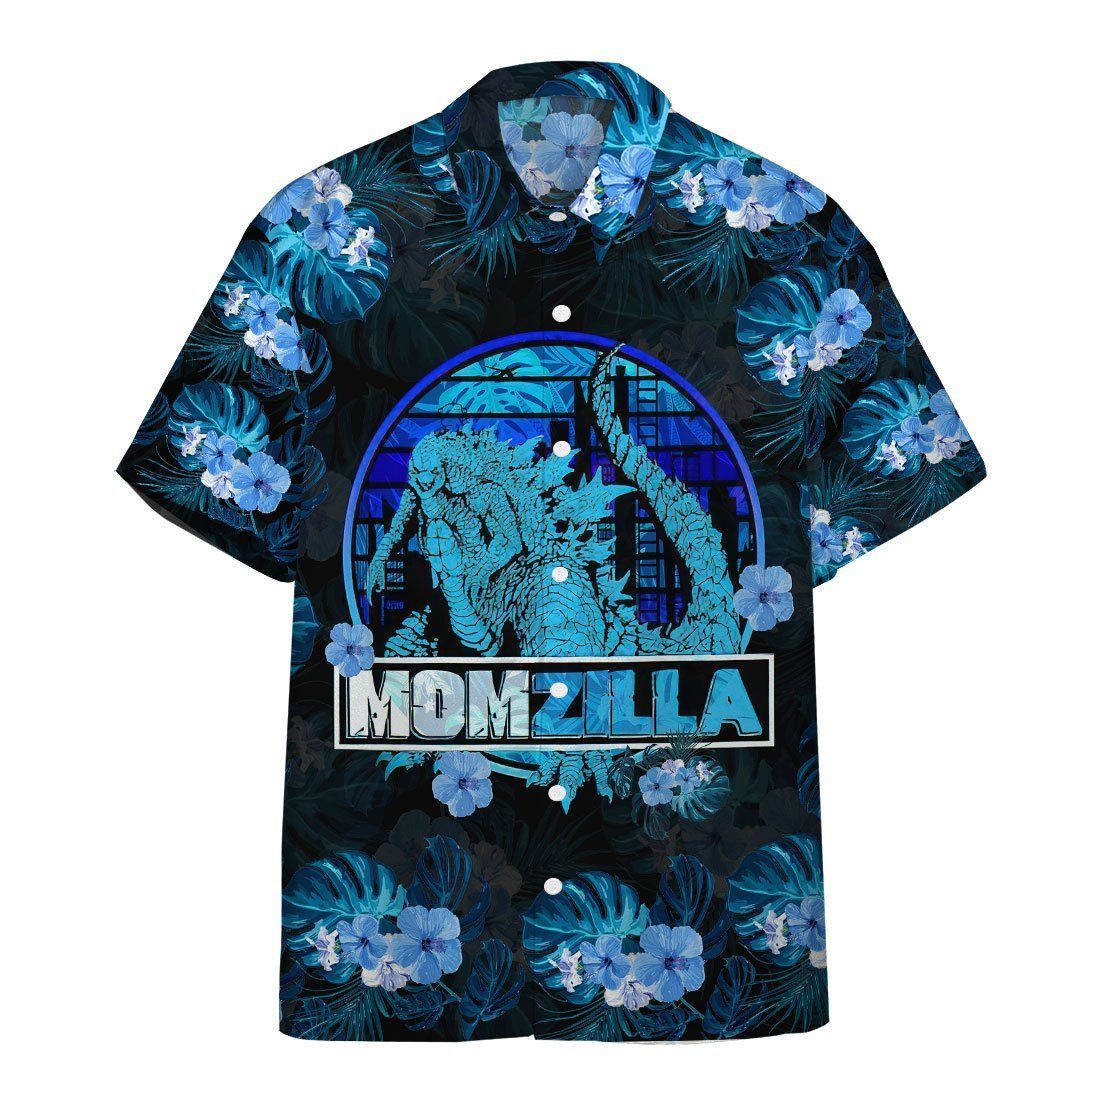 Momzilla Mother Day Hawaii Shirt